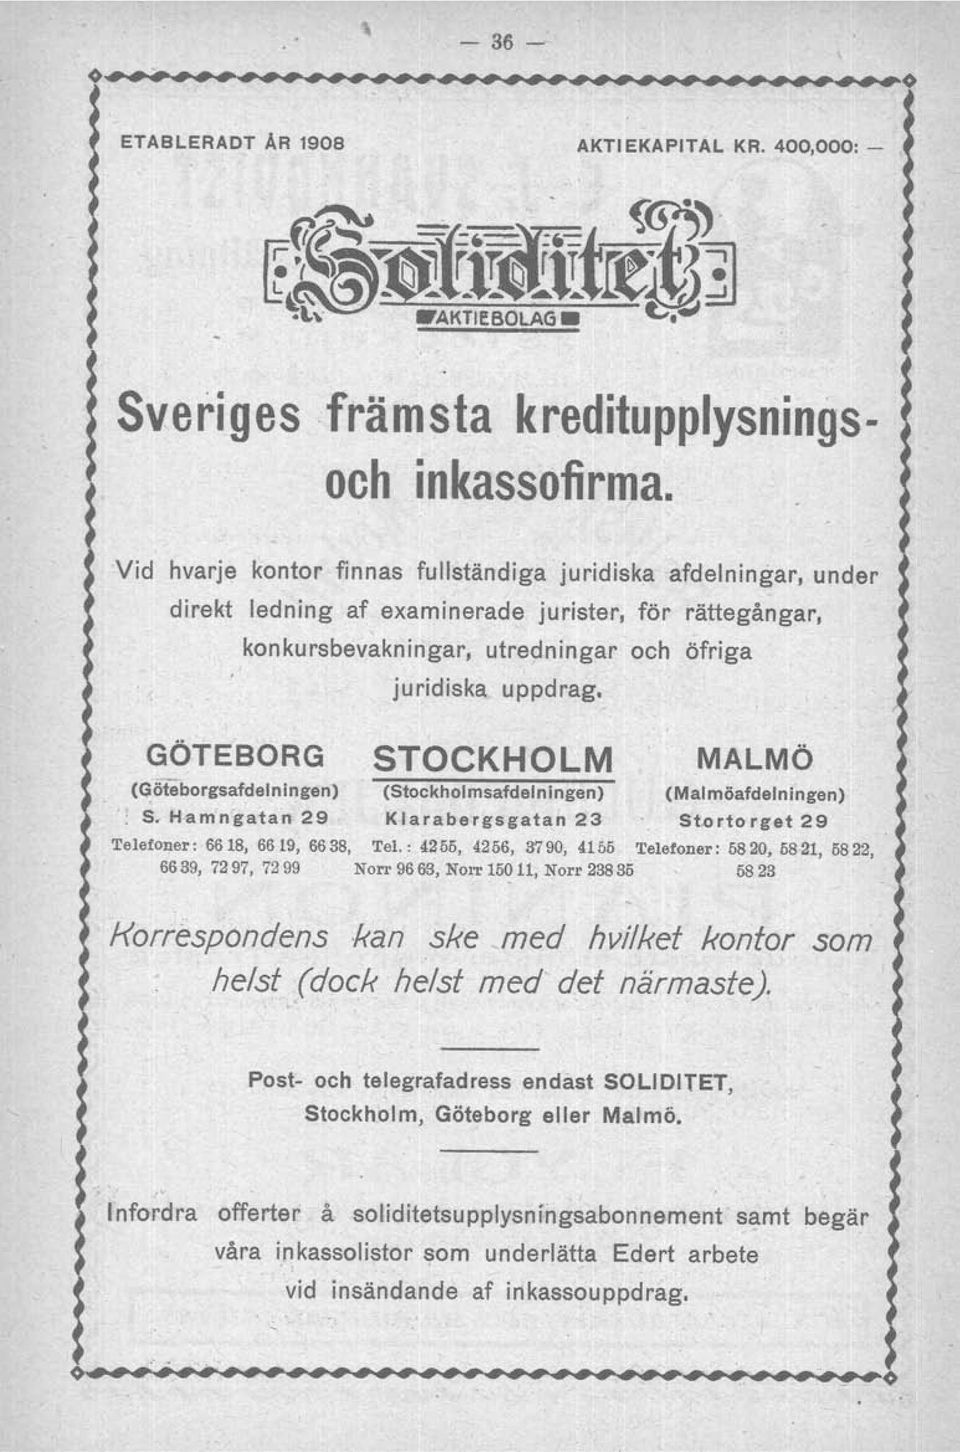 GÖTEBORG STOCKHOLM MALMÖ (Göteborgsafdel ningen) (Stockholmsafdel ningen) (Mal möafdelningen) '; S. H1lm'n'gatan 29 Klarabergsgatan 23 St.ortorget 29 Telefoner: 6618, 6619, 6638, Tel.